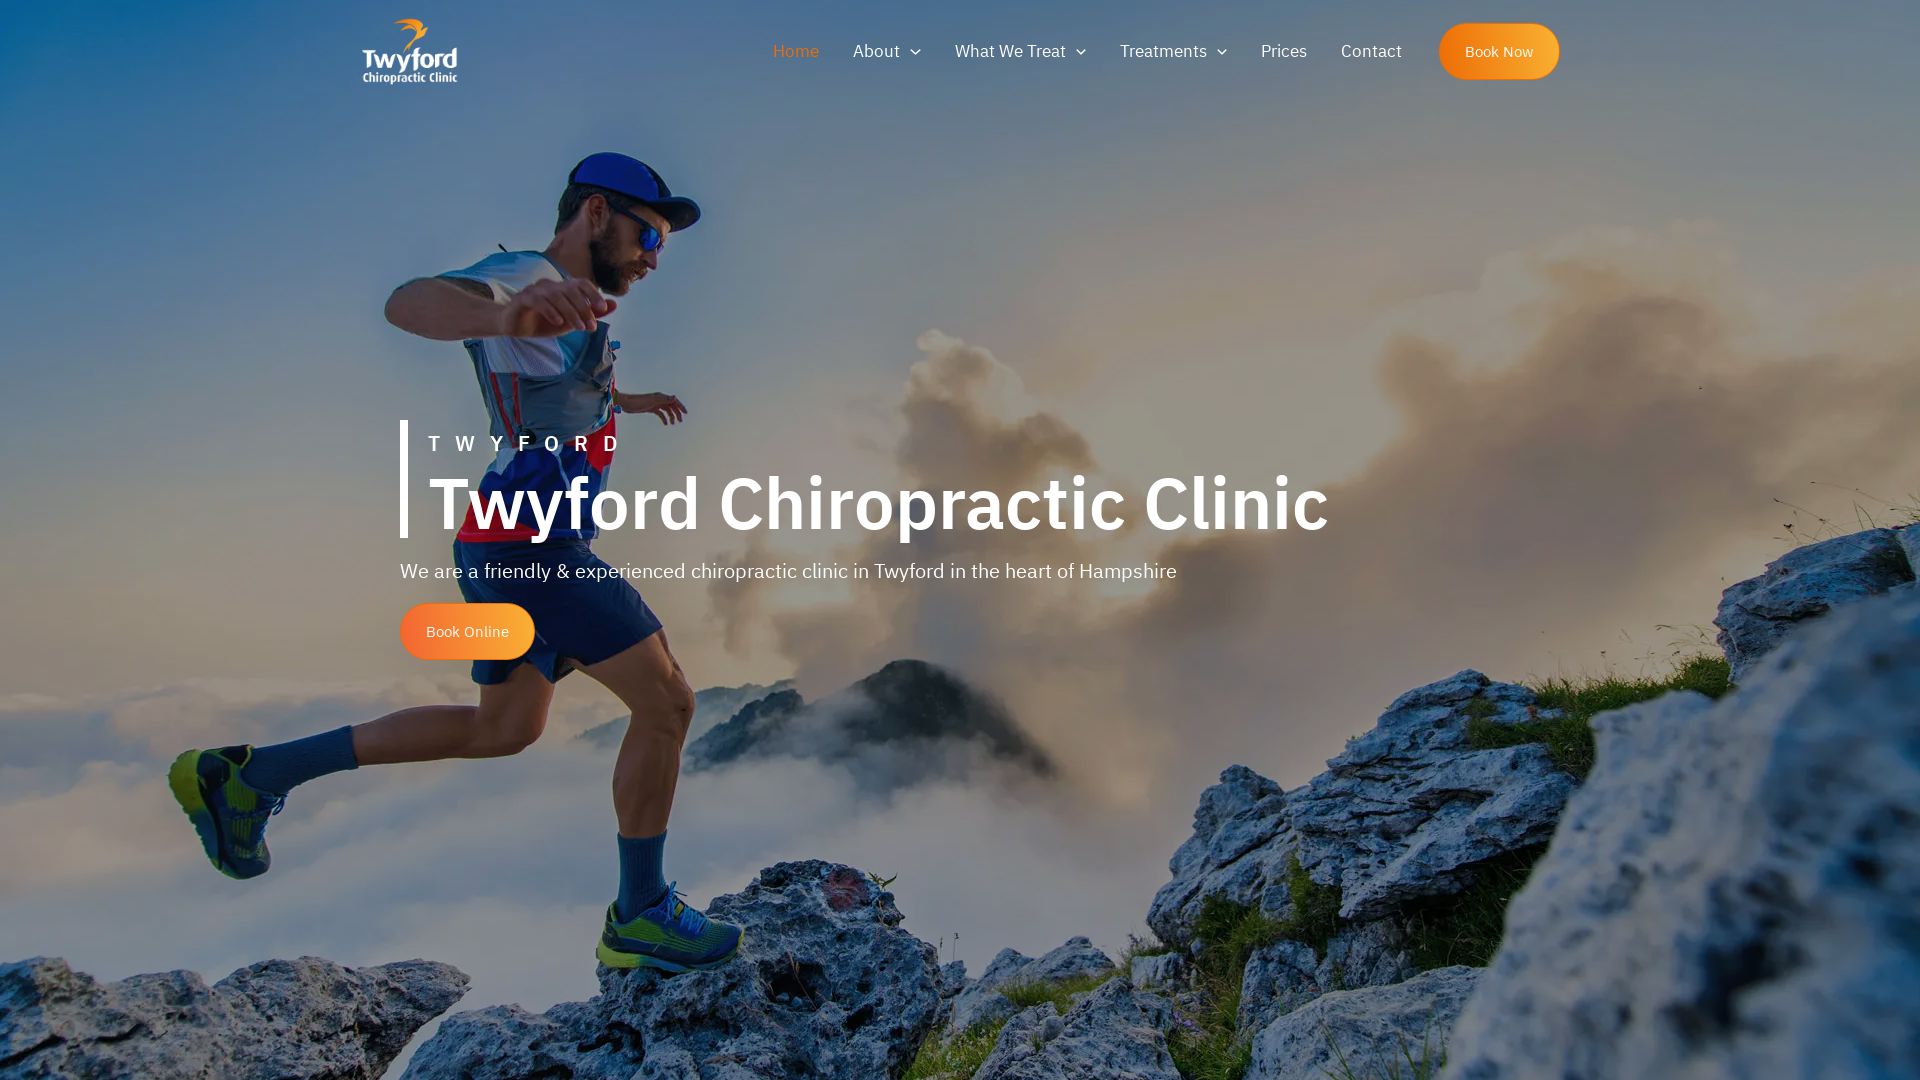 Estado web twyfordchiropractic.co.uk está   ONLINE